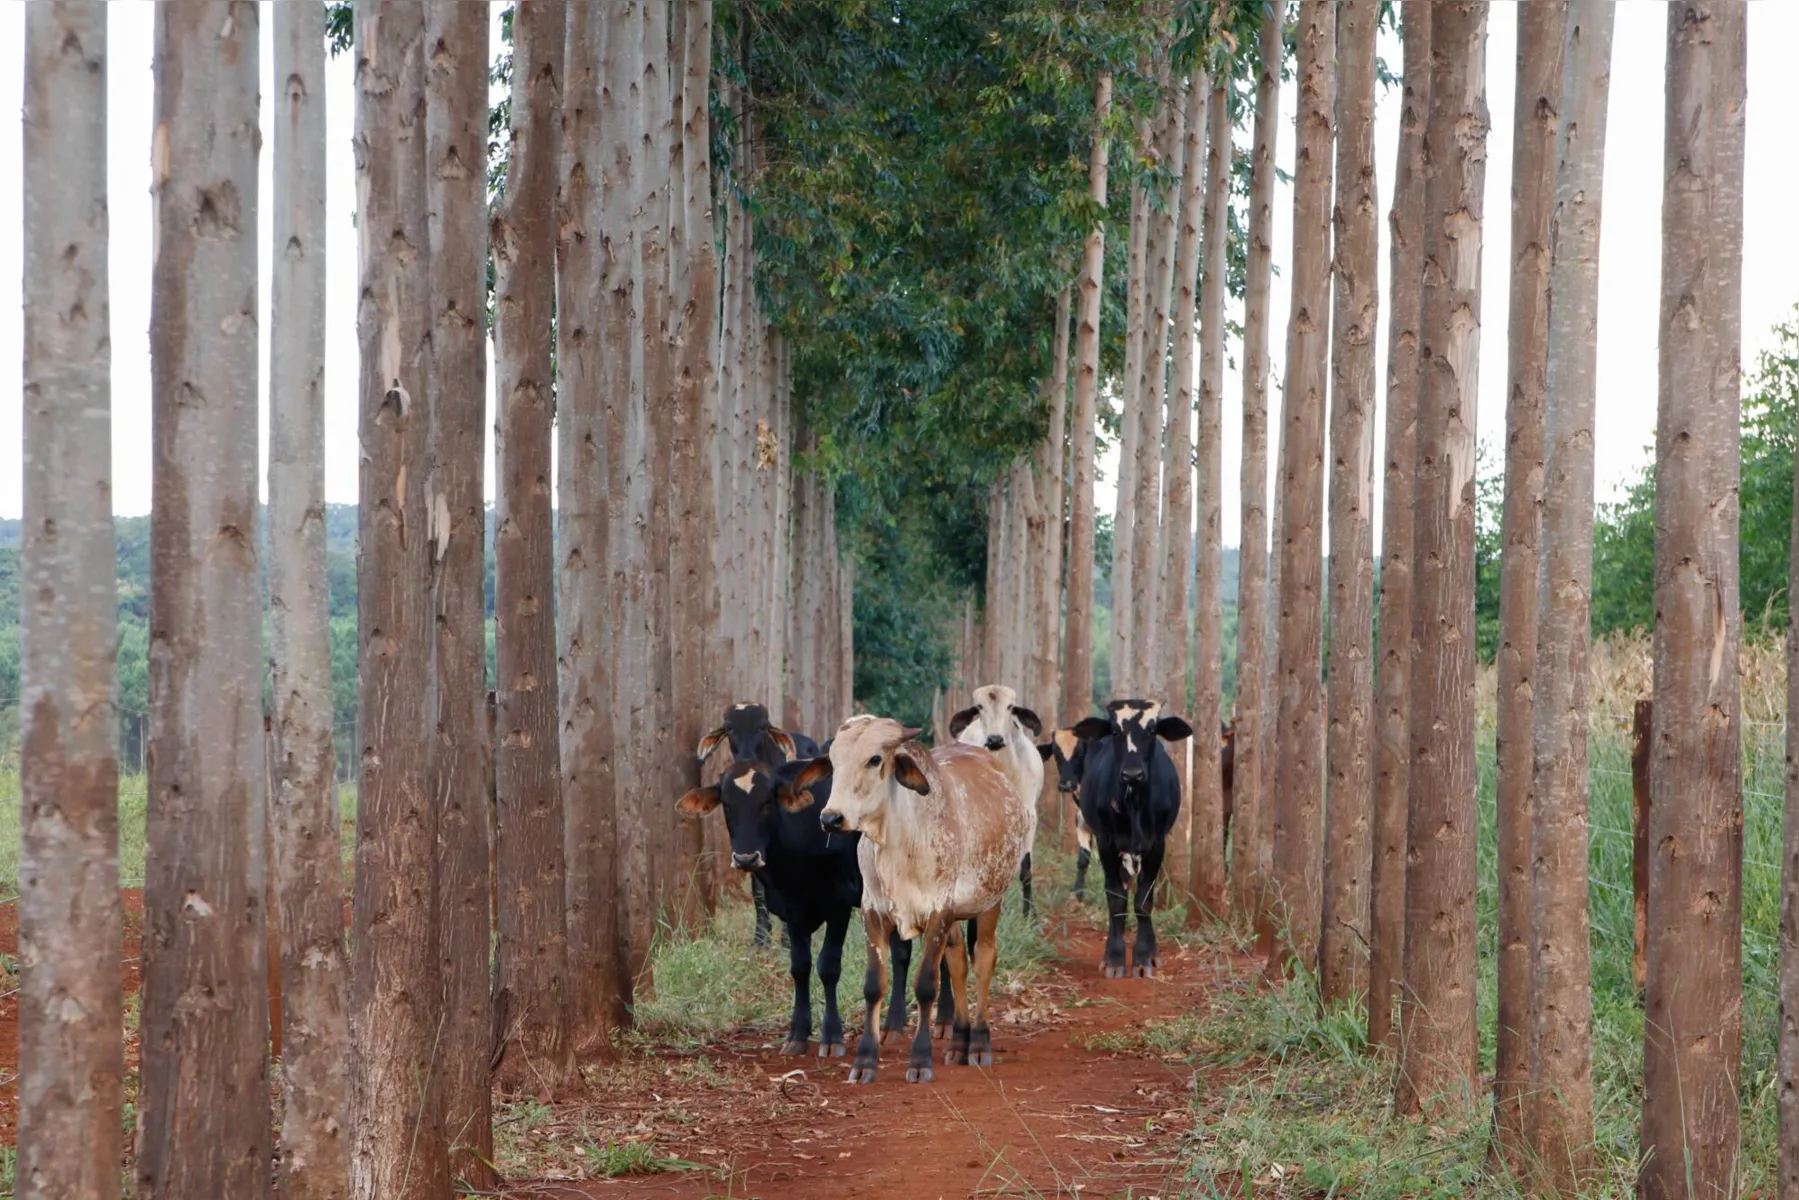 A Integração Lavoura-Pecuária-Floresta é uma das ferramentas que o Plano ABC+ pretende incentivar